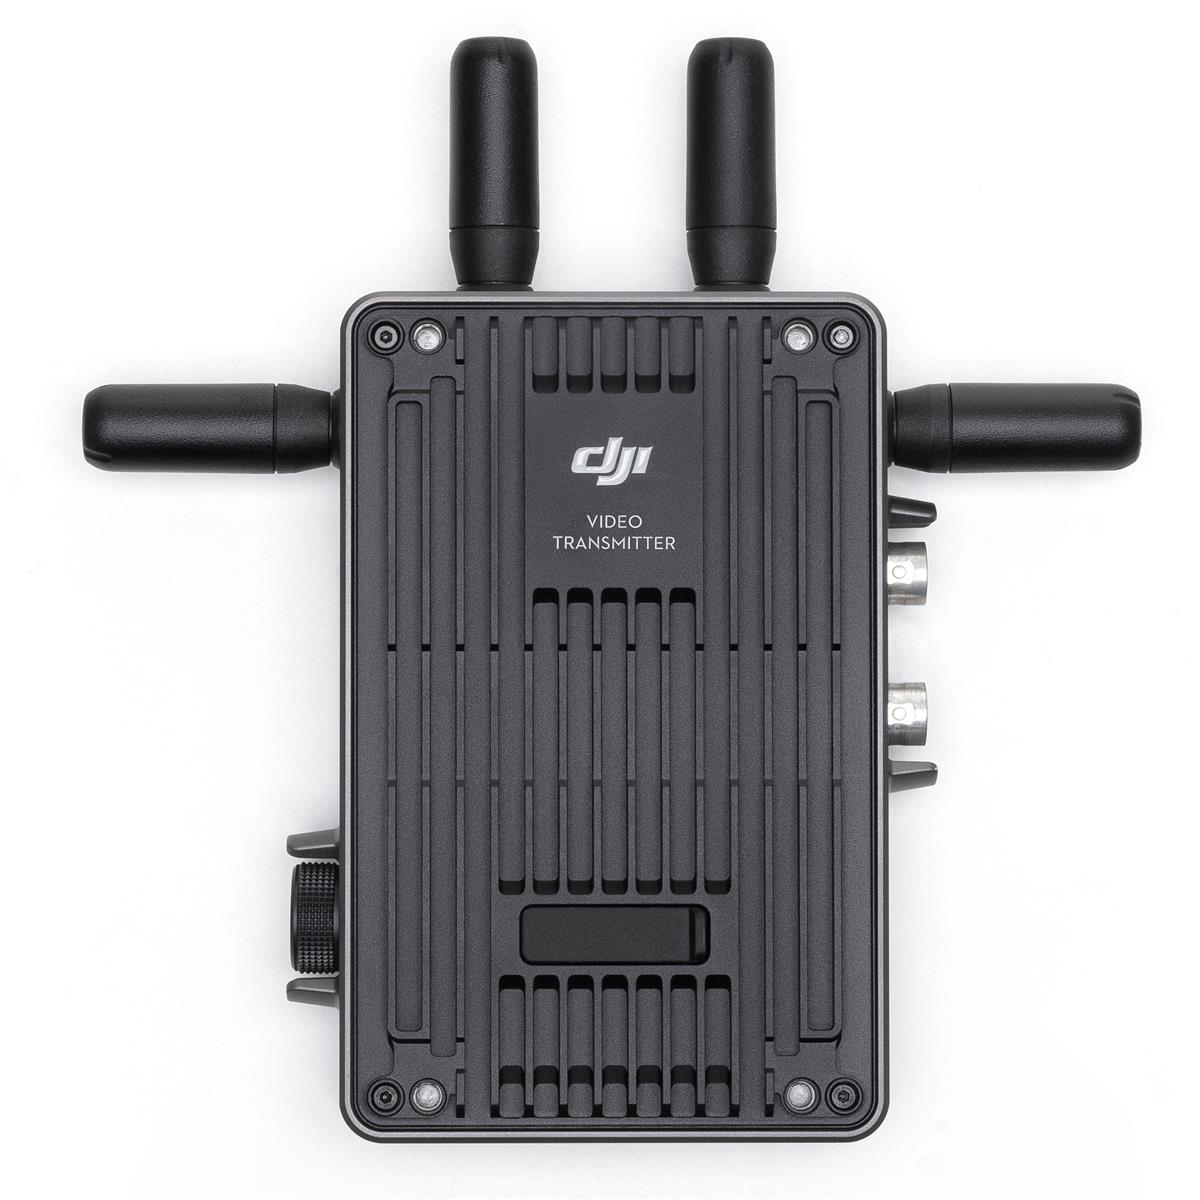 Image of DJI Video Transmitter